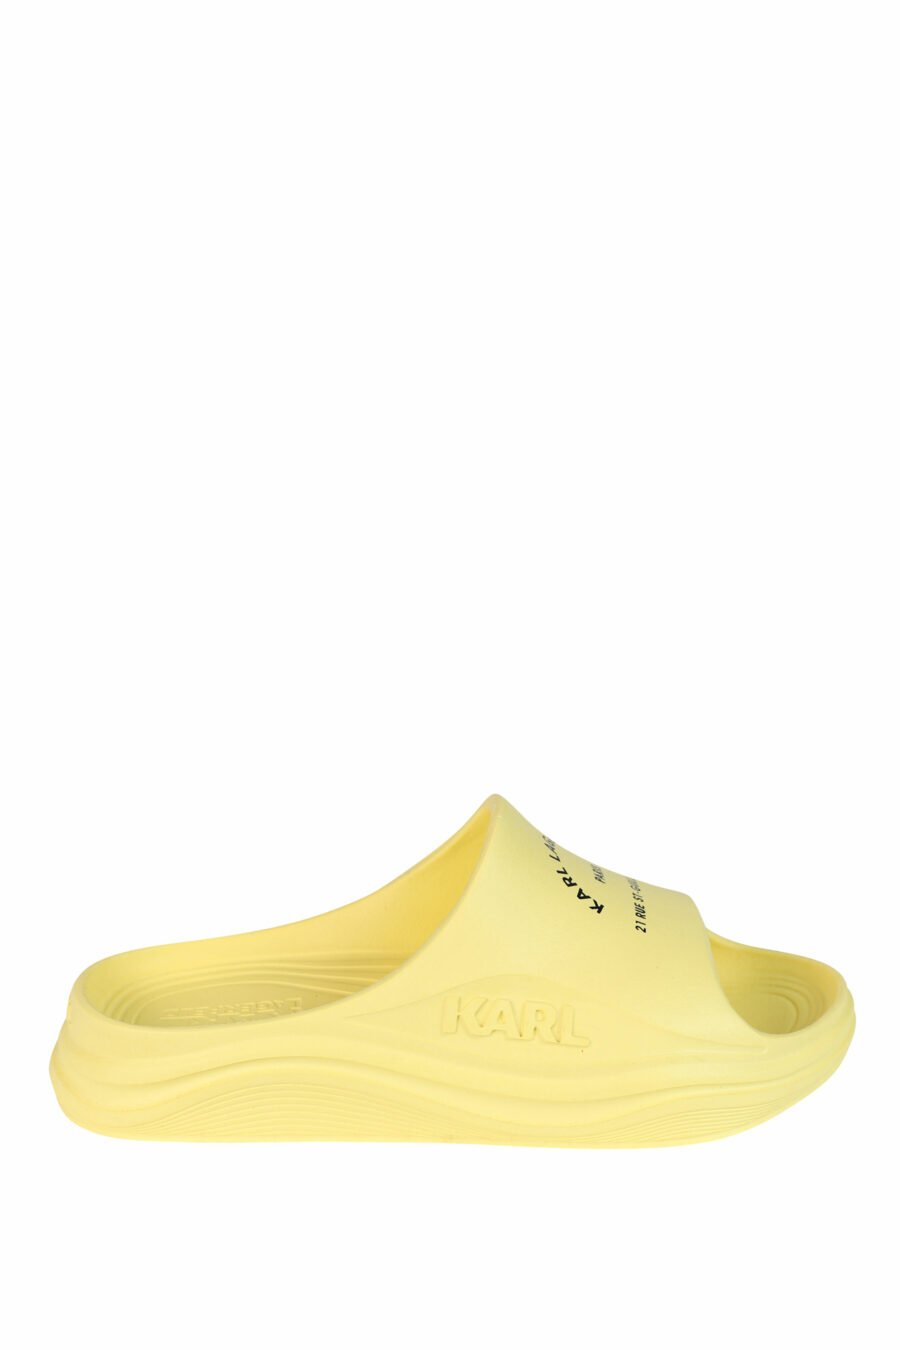 Sandálias "skoona" amarelas com logótipo - 5059529246012